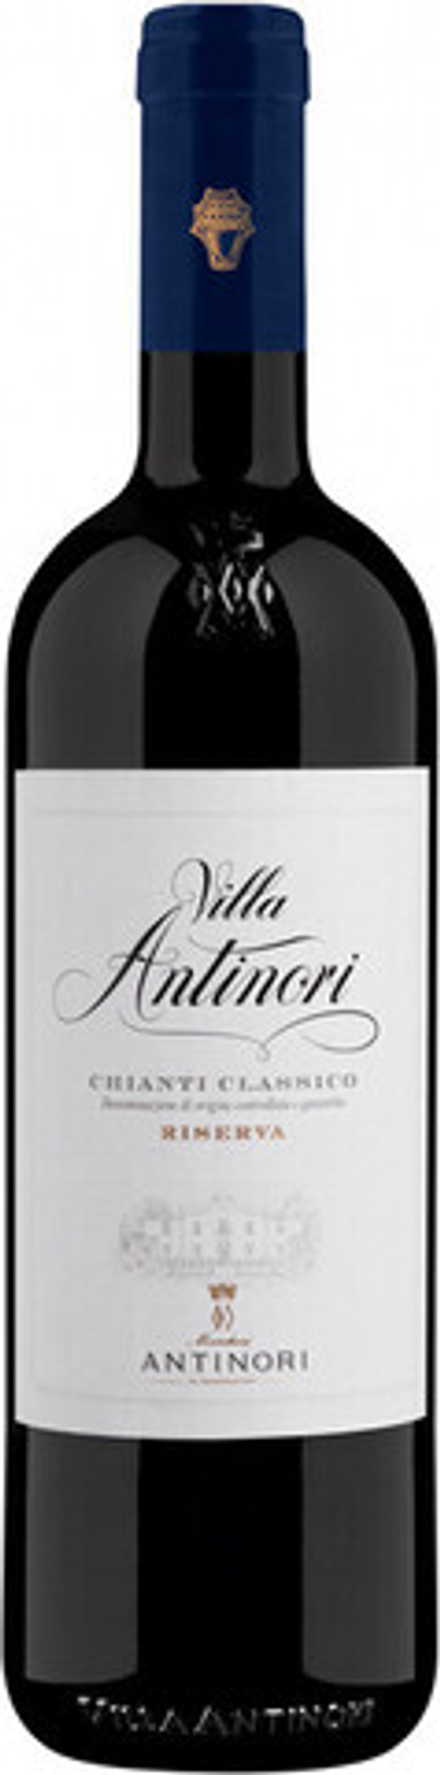 Вино Villa Antinori Chianti Classico DOCG Riserva, 0,75 л.